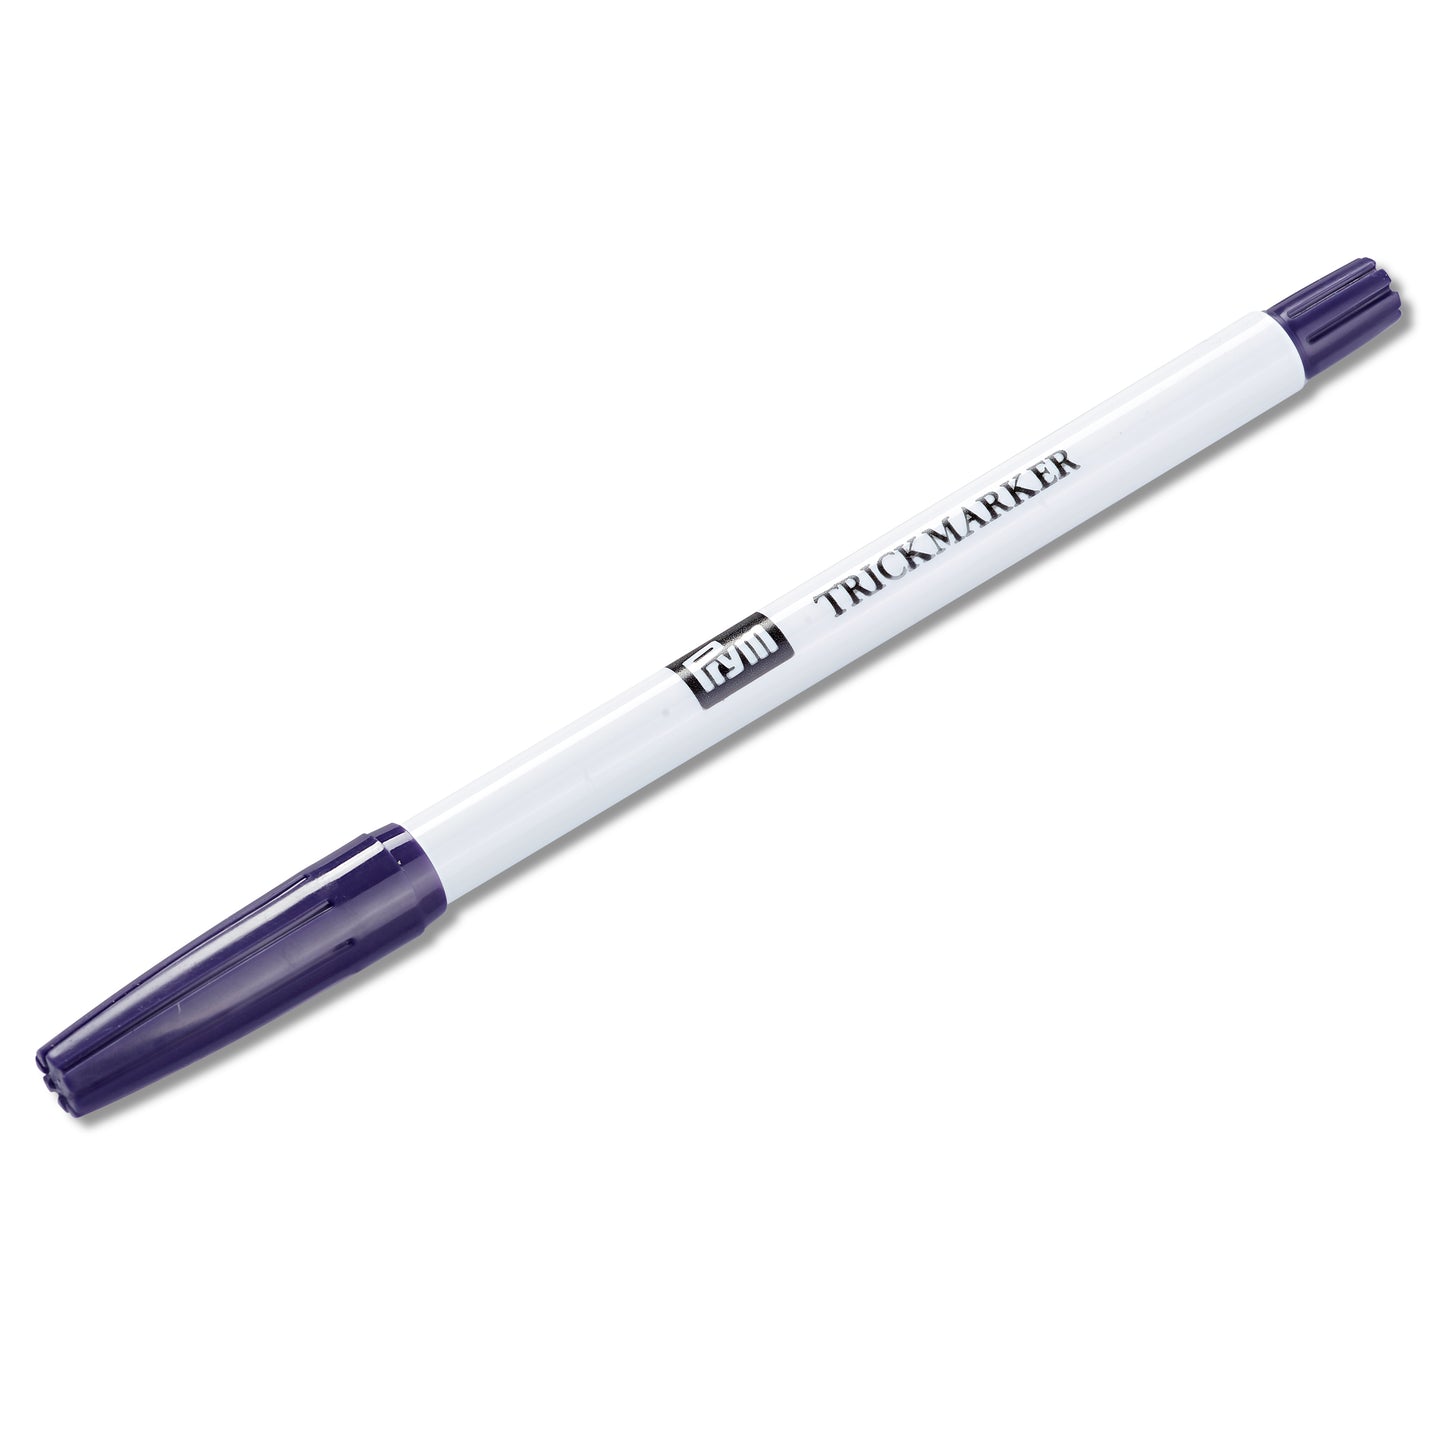 Prym - Marking Pen Self-Erasing - 611809